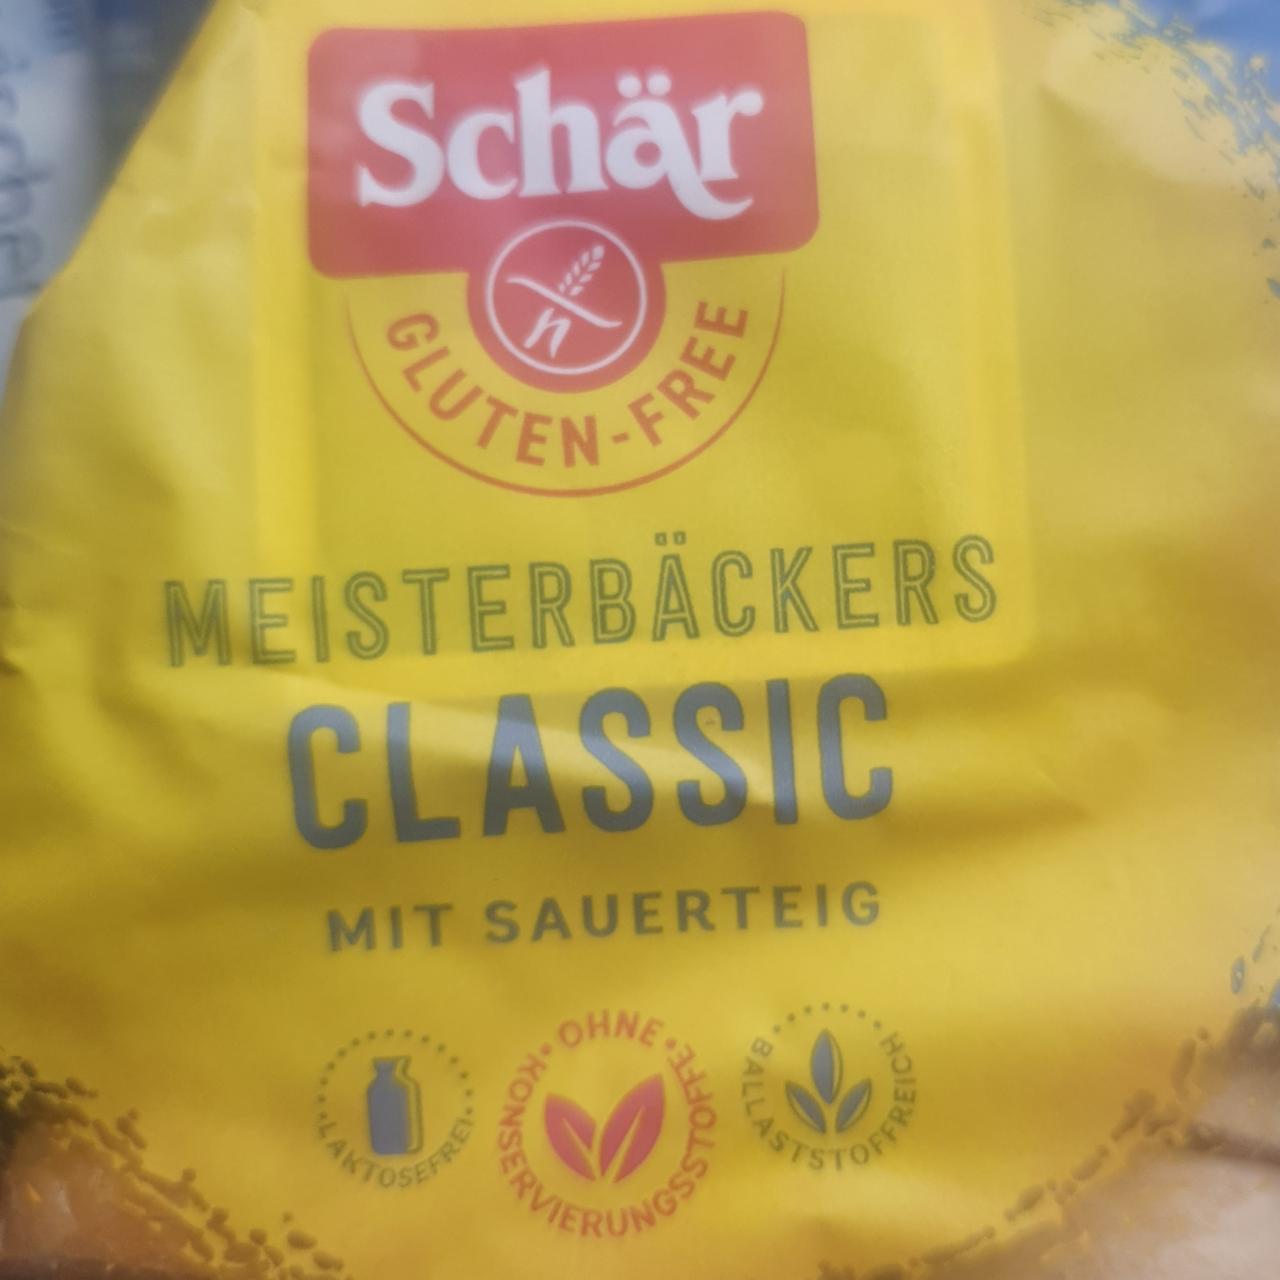 Képek - Meisterbäckers classic kenyér Schär